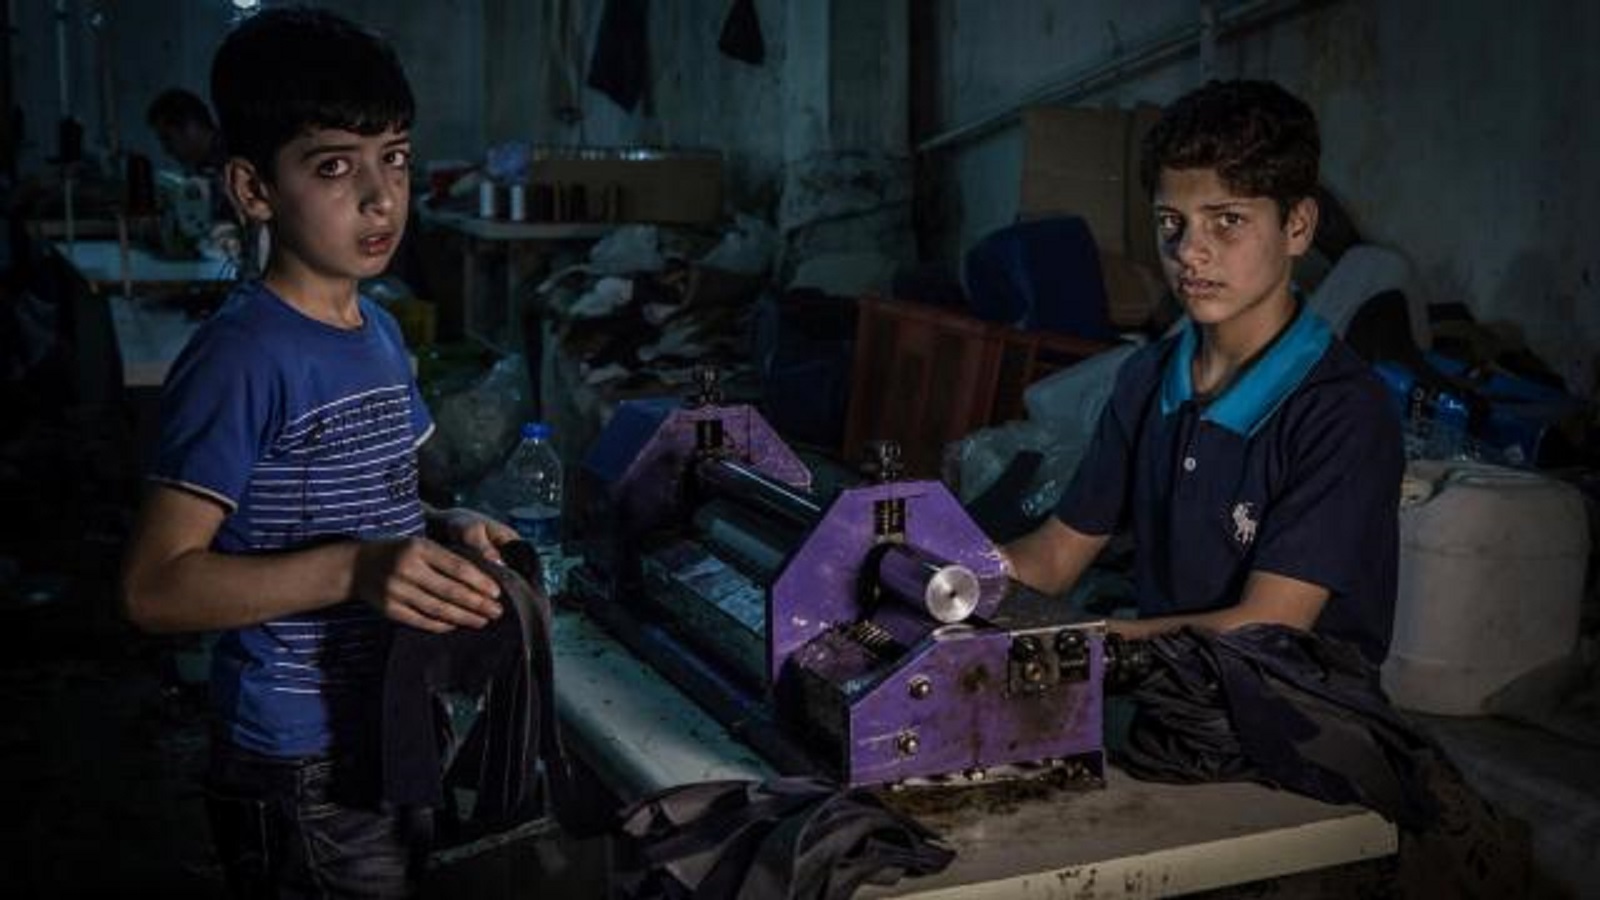 يعمل الأطفال اللاجئون في صناعة منتجات توزع في أوروبا